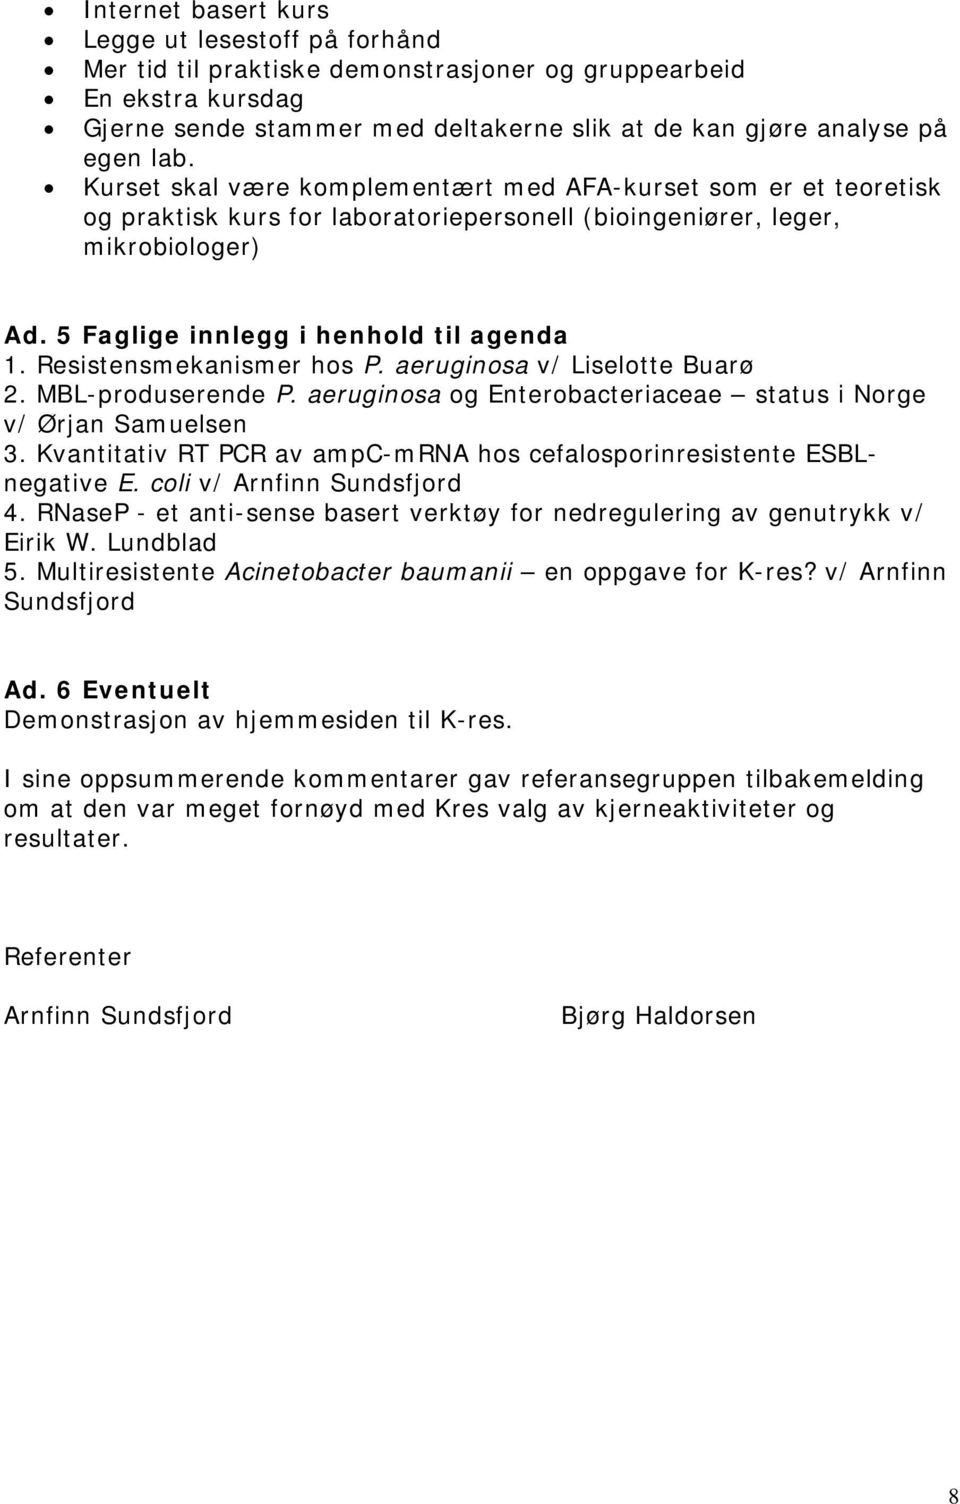 Resistensmekanismer hos P. aeruginosa v/ Liselotte Buarø 2. MBL-produserende P. aeruginosa og Enterobacteriaceae status i Norge v/ Ørjan Samuelsen 3.